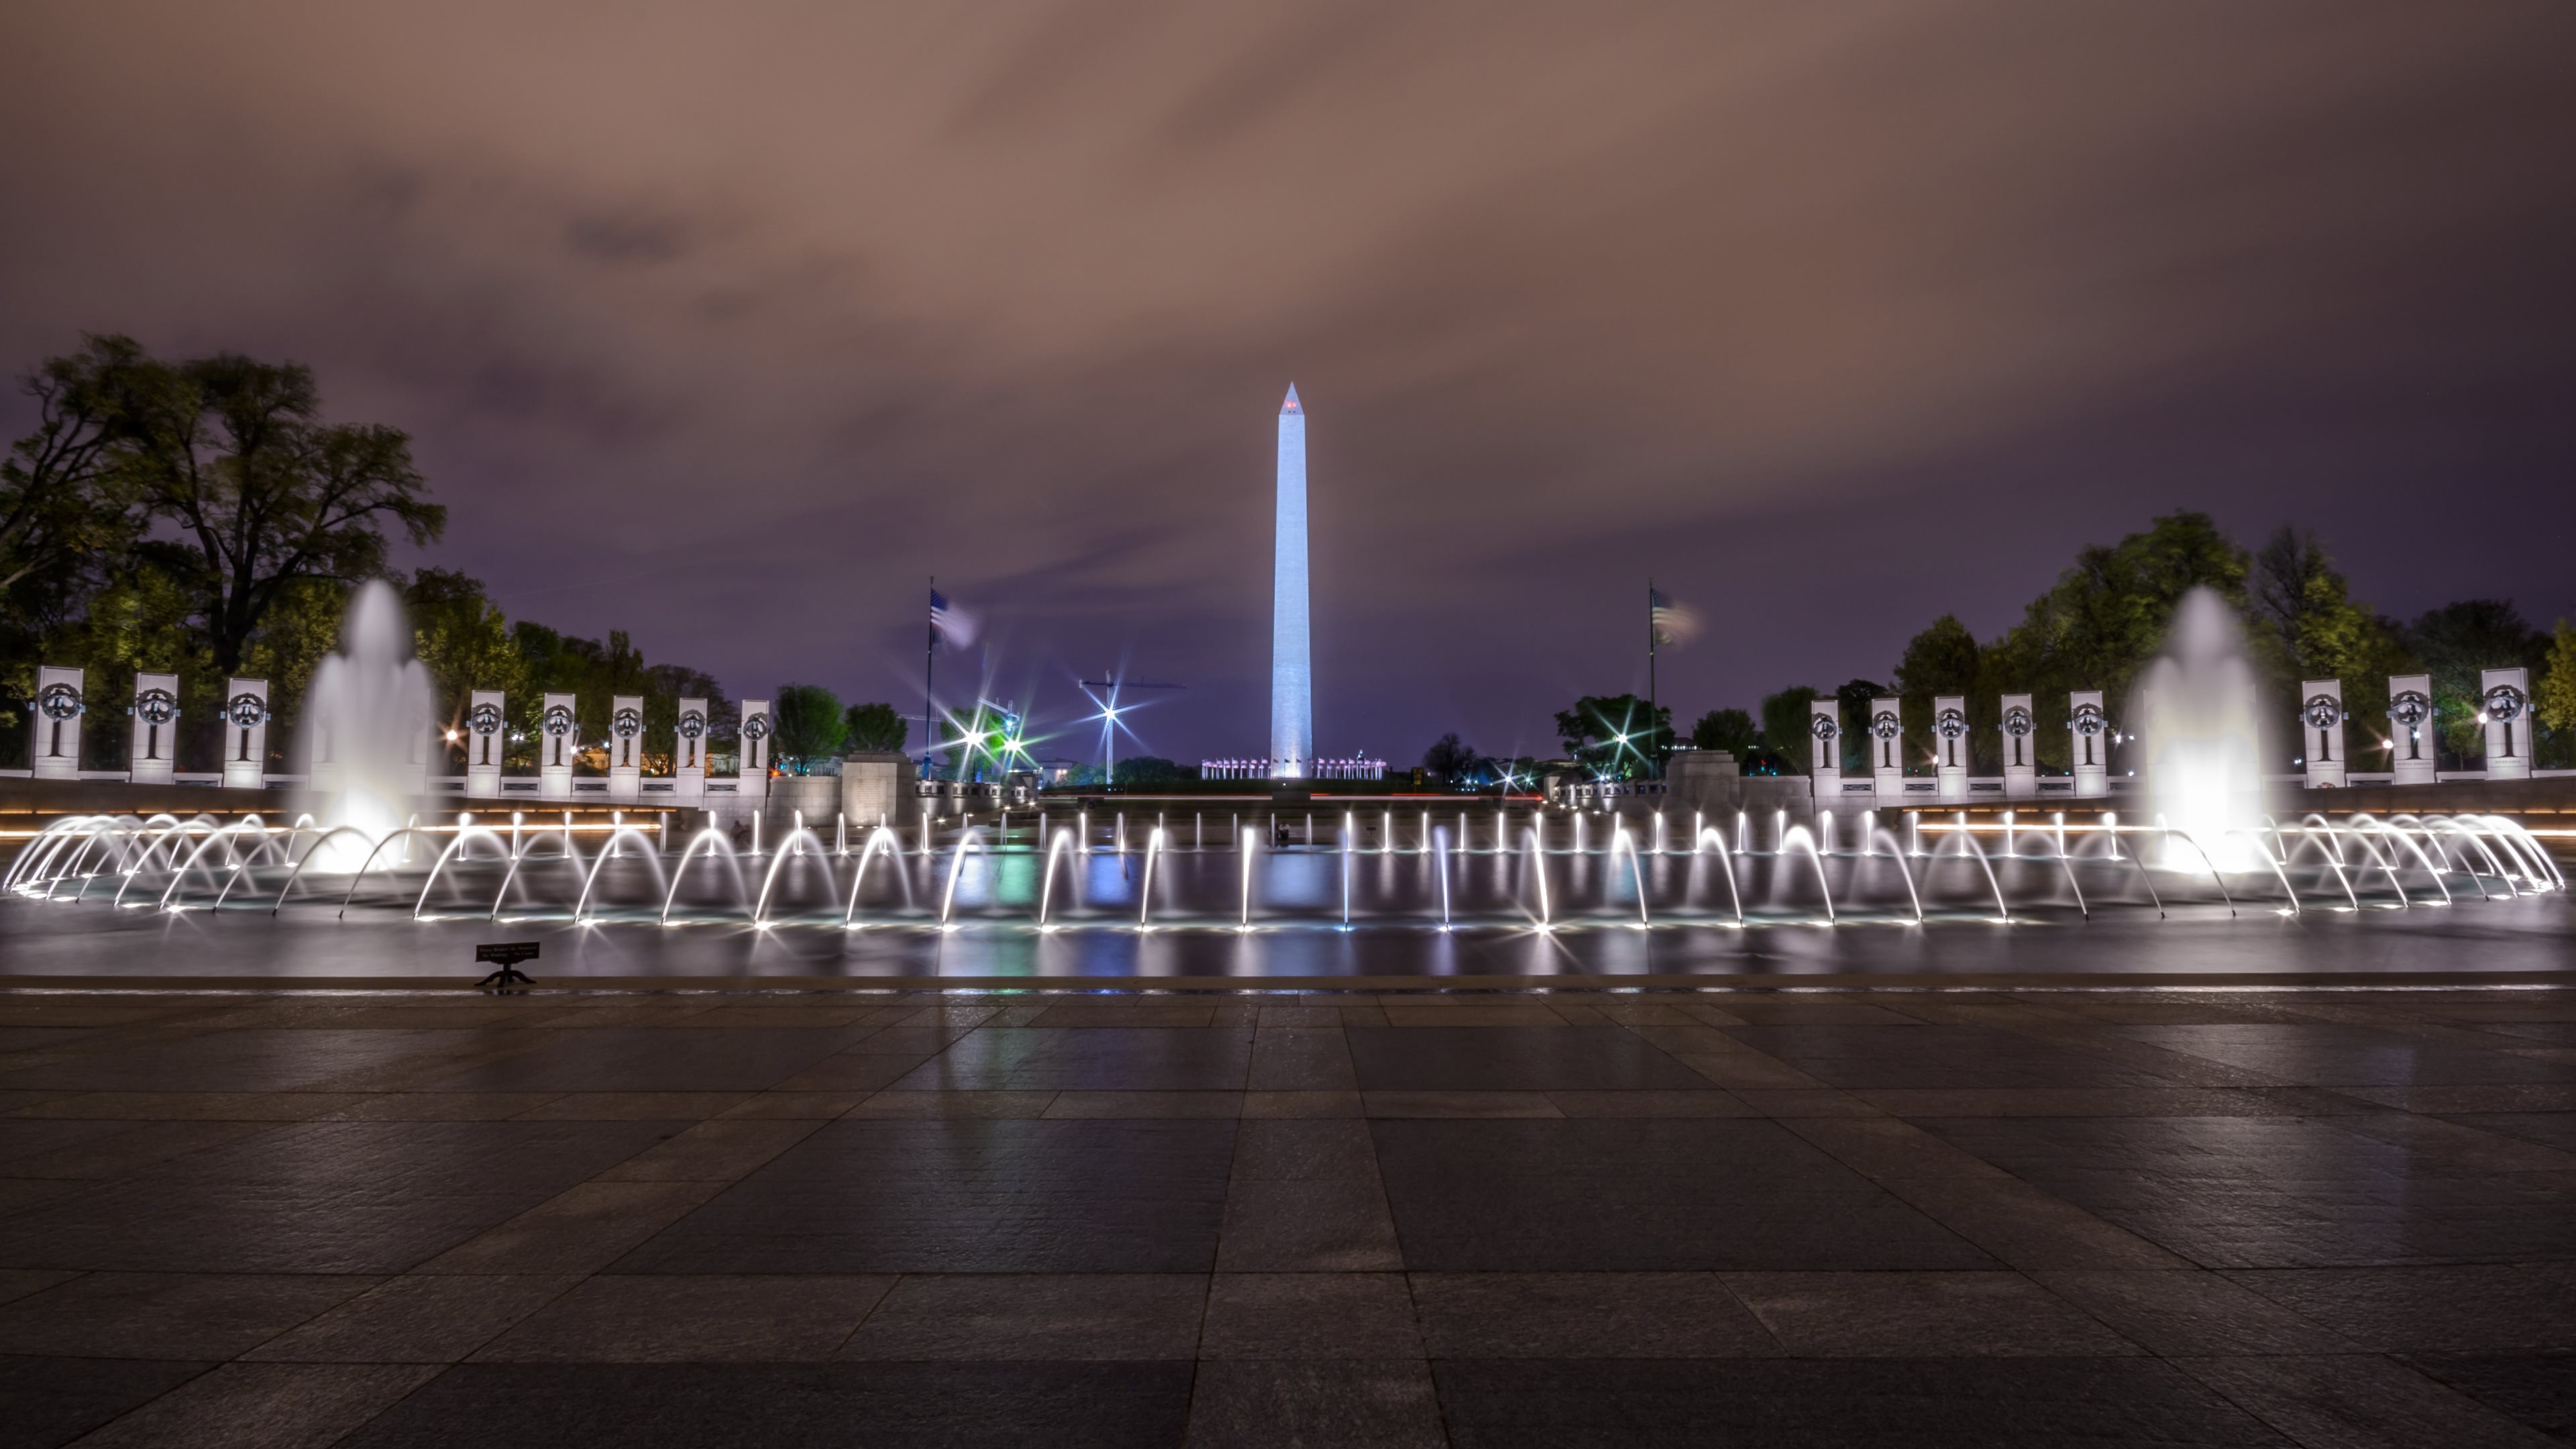 Скачать обои Монумент Вашингтона на телефон бесплатно